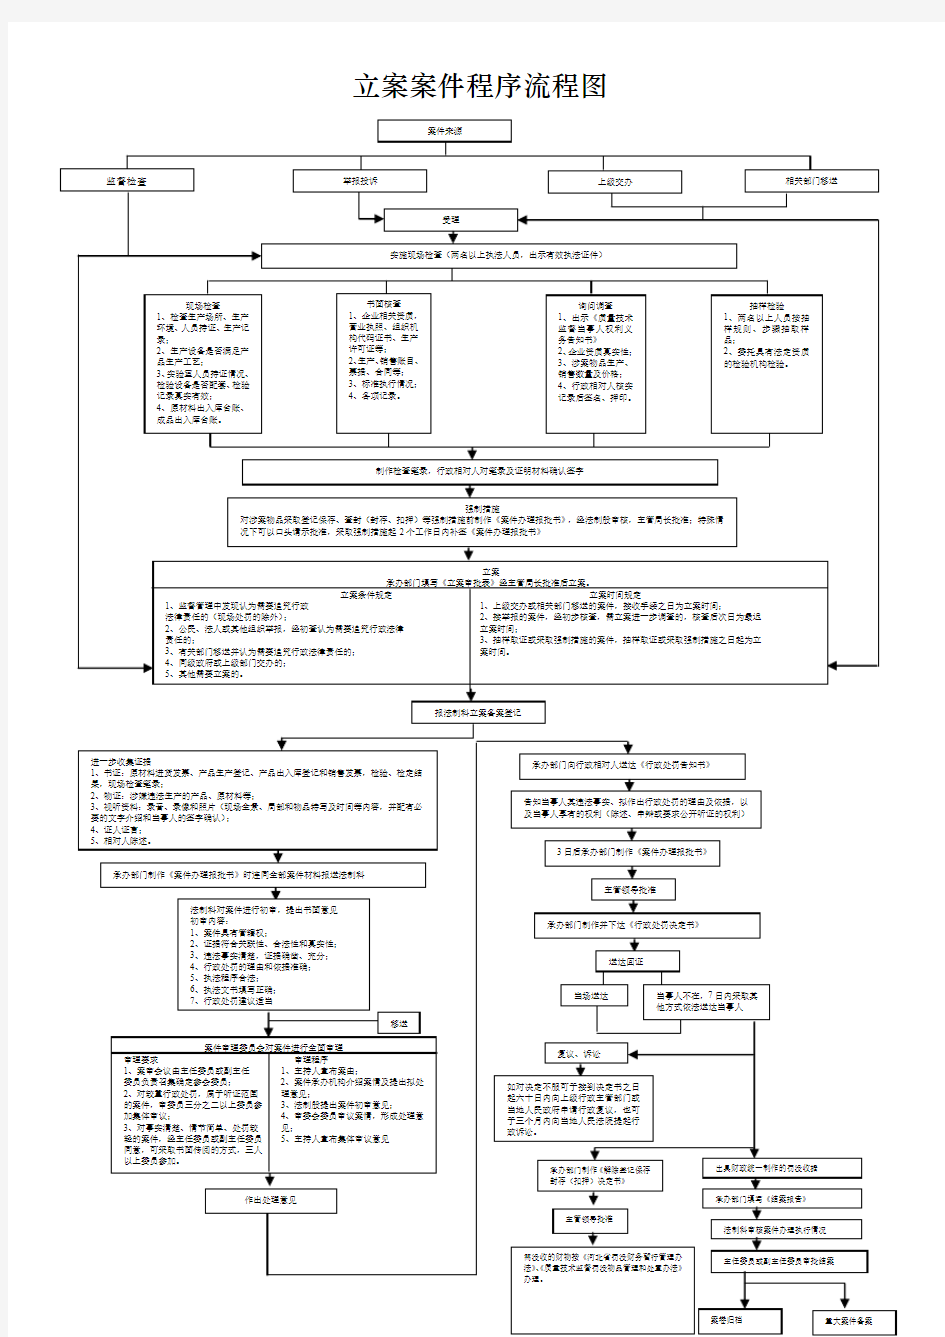 立案案件程序流程图